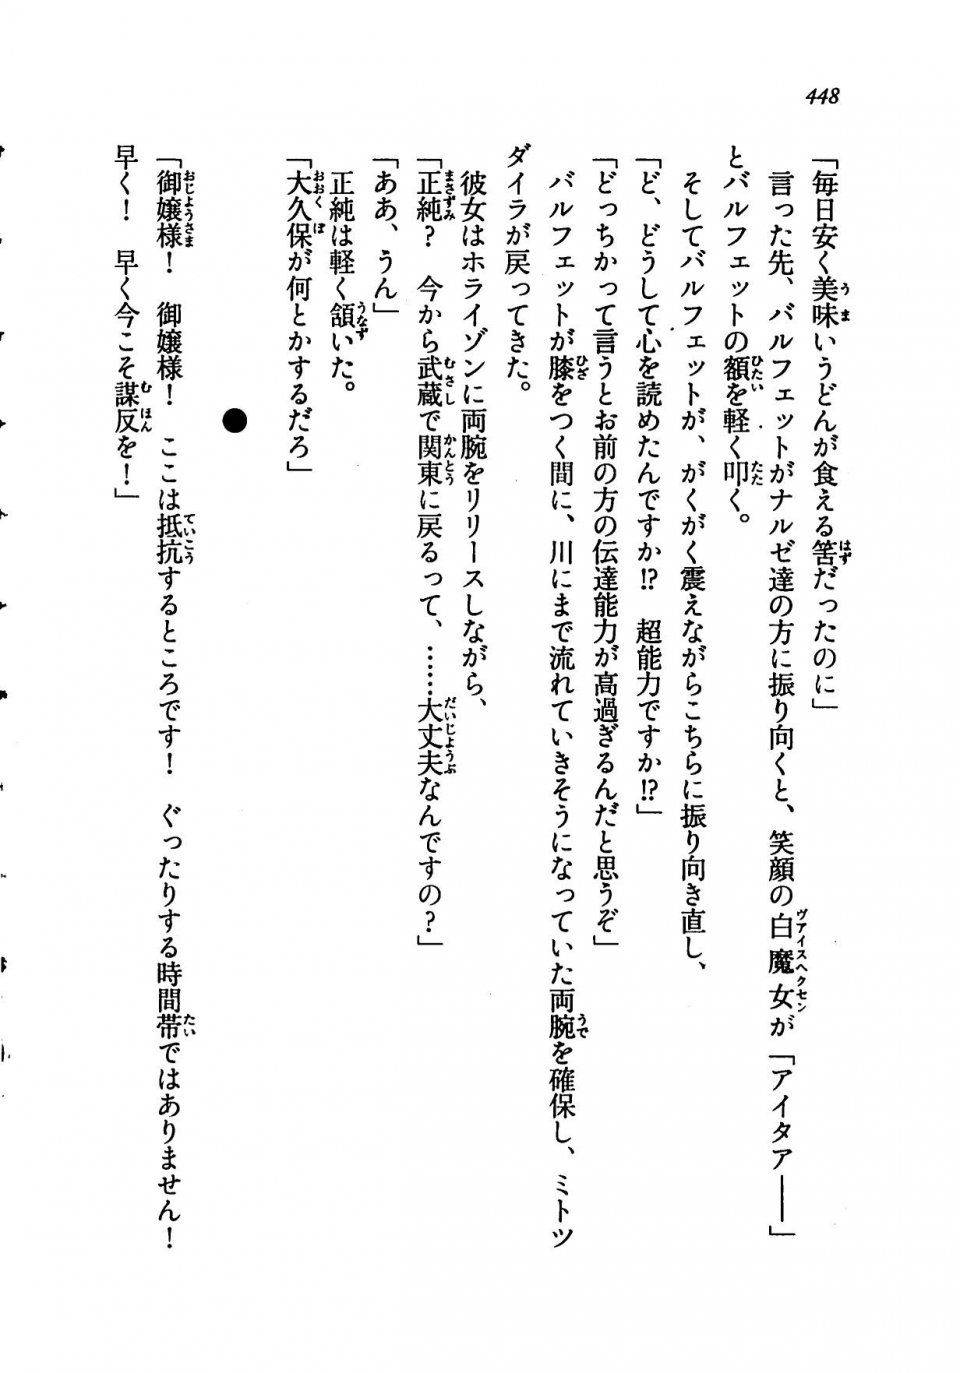 Kyoukai Senjou no Horizon LN Vol 19(8A) - Photo #448